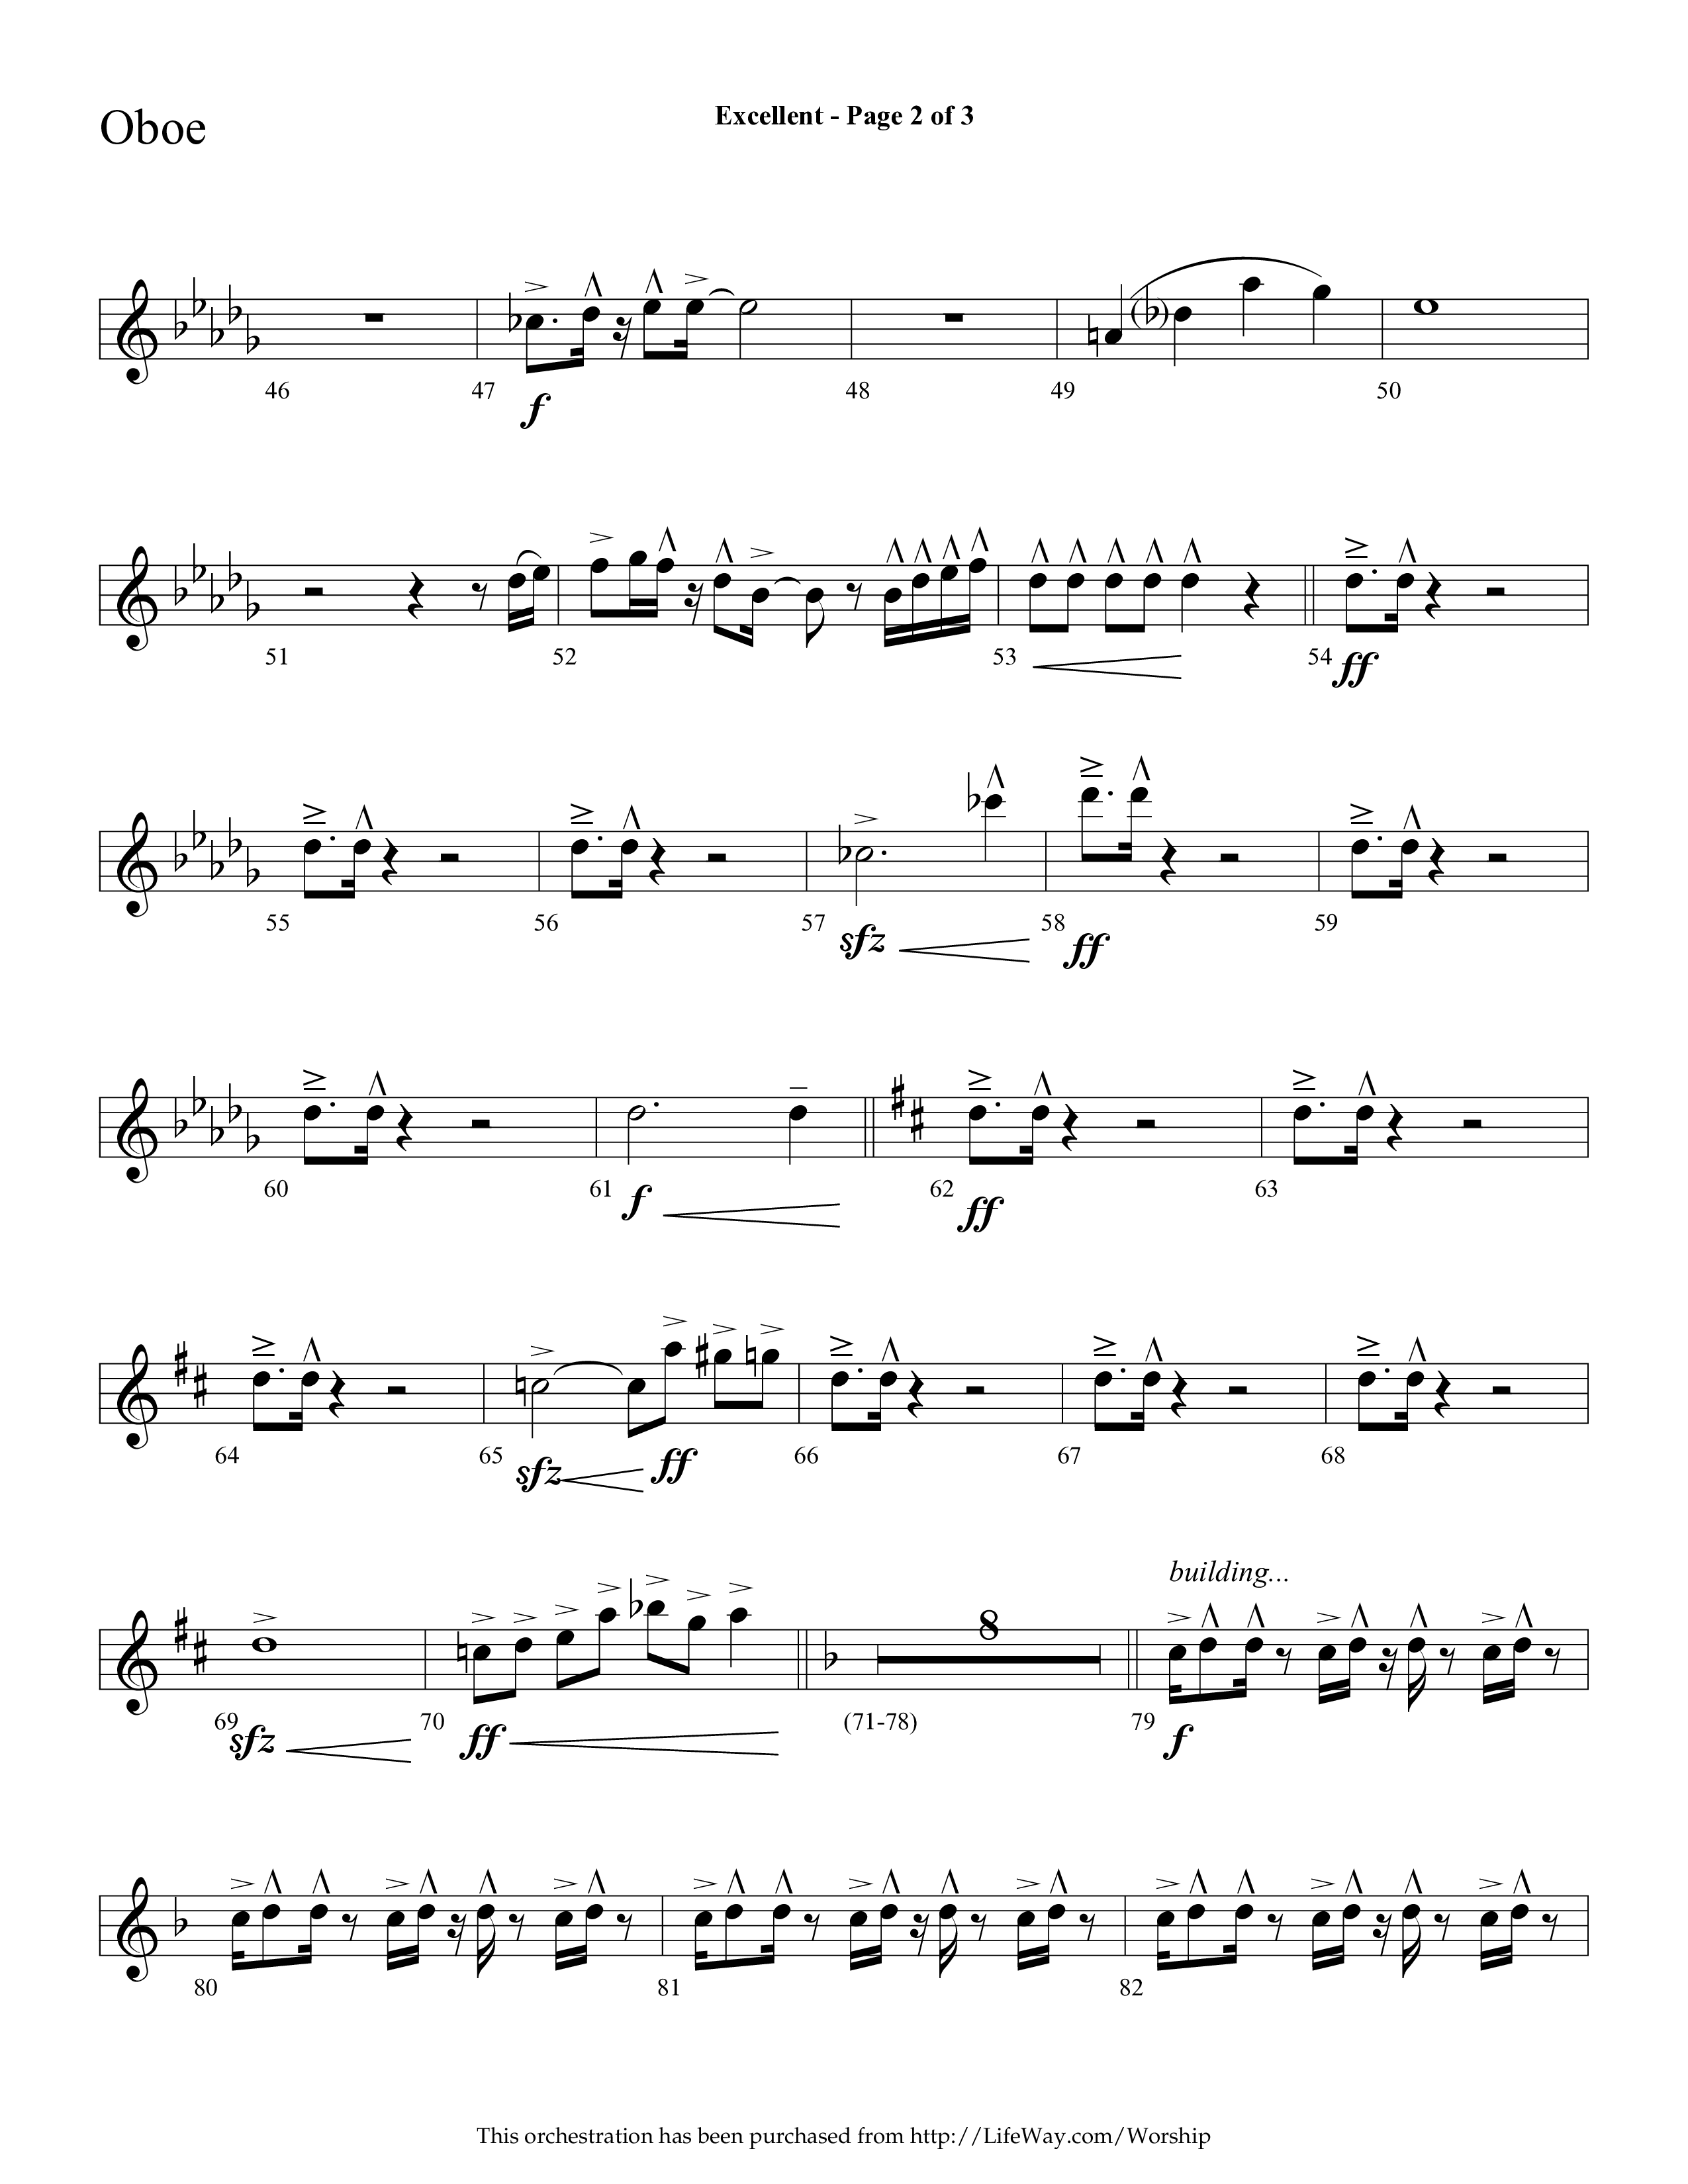 Excellent (Choral Anthem SATB) Oboe (Lifeway Choral / Arr. Cliff Duren)